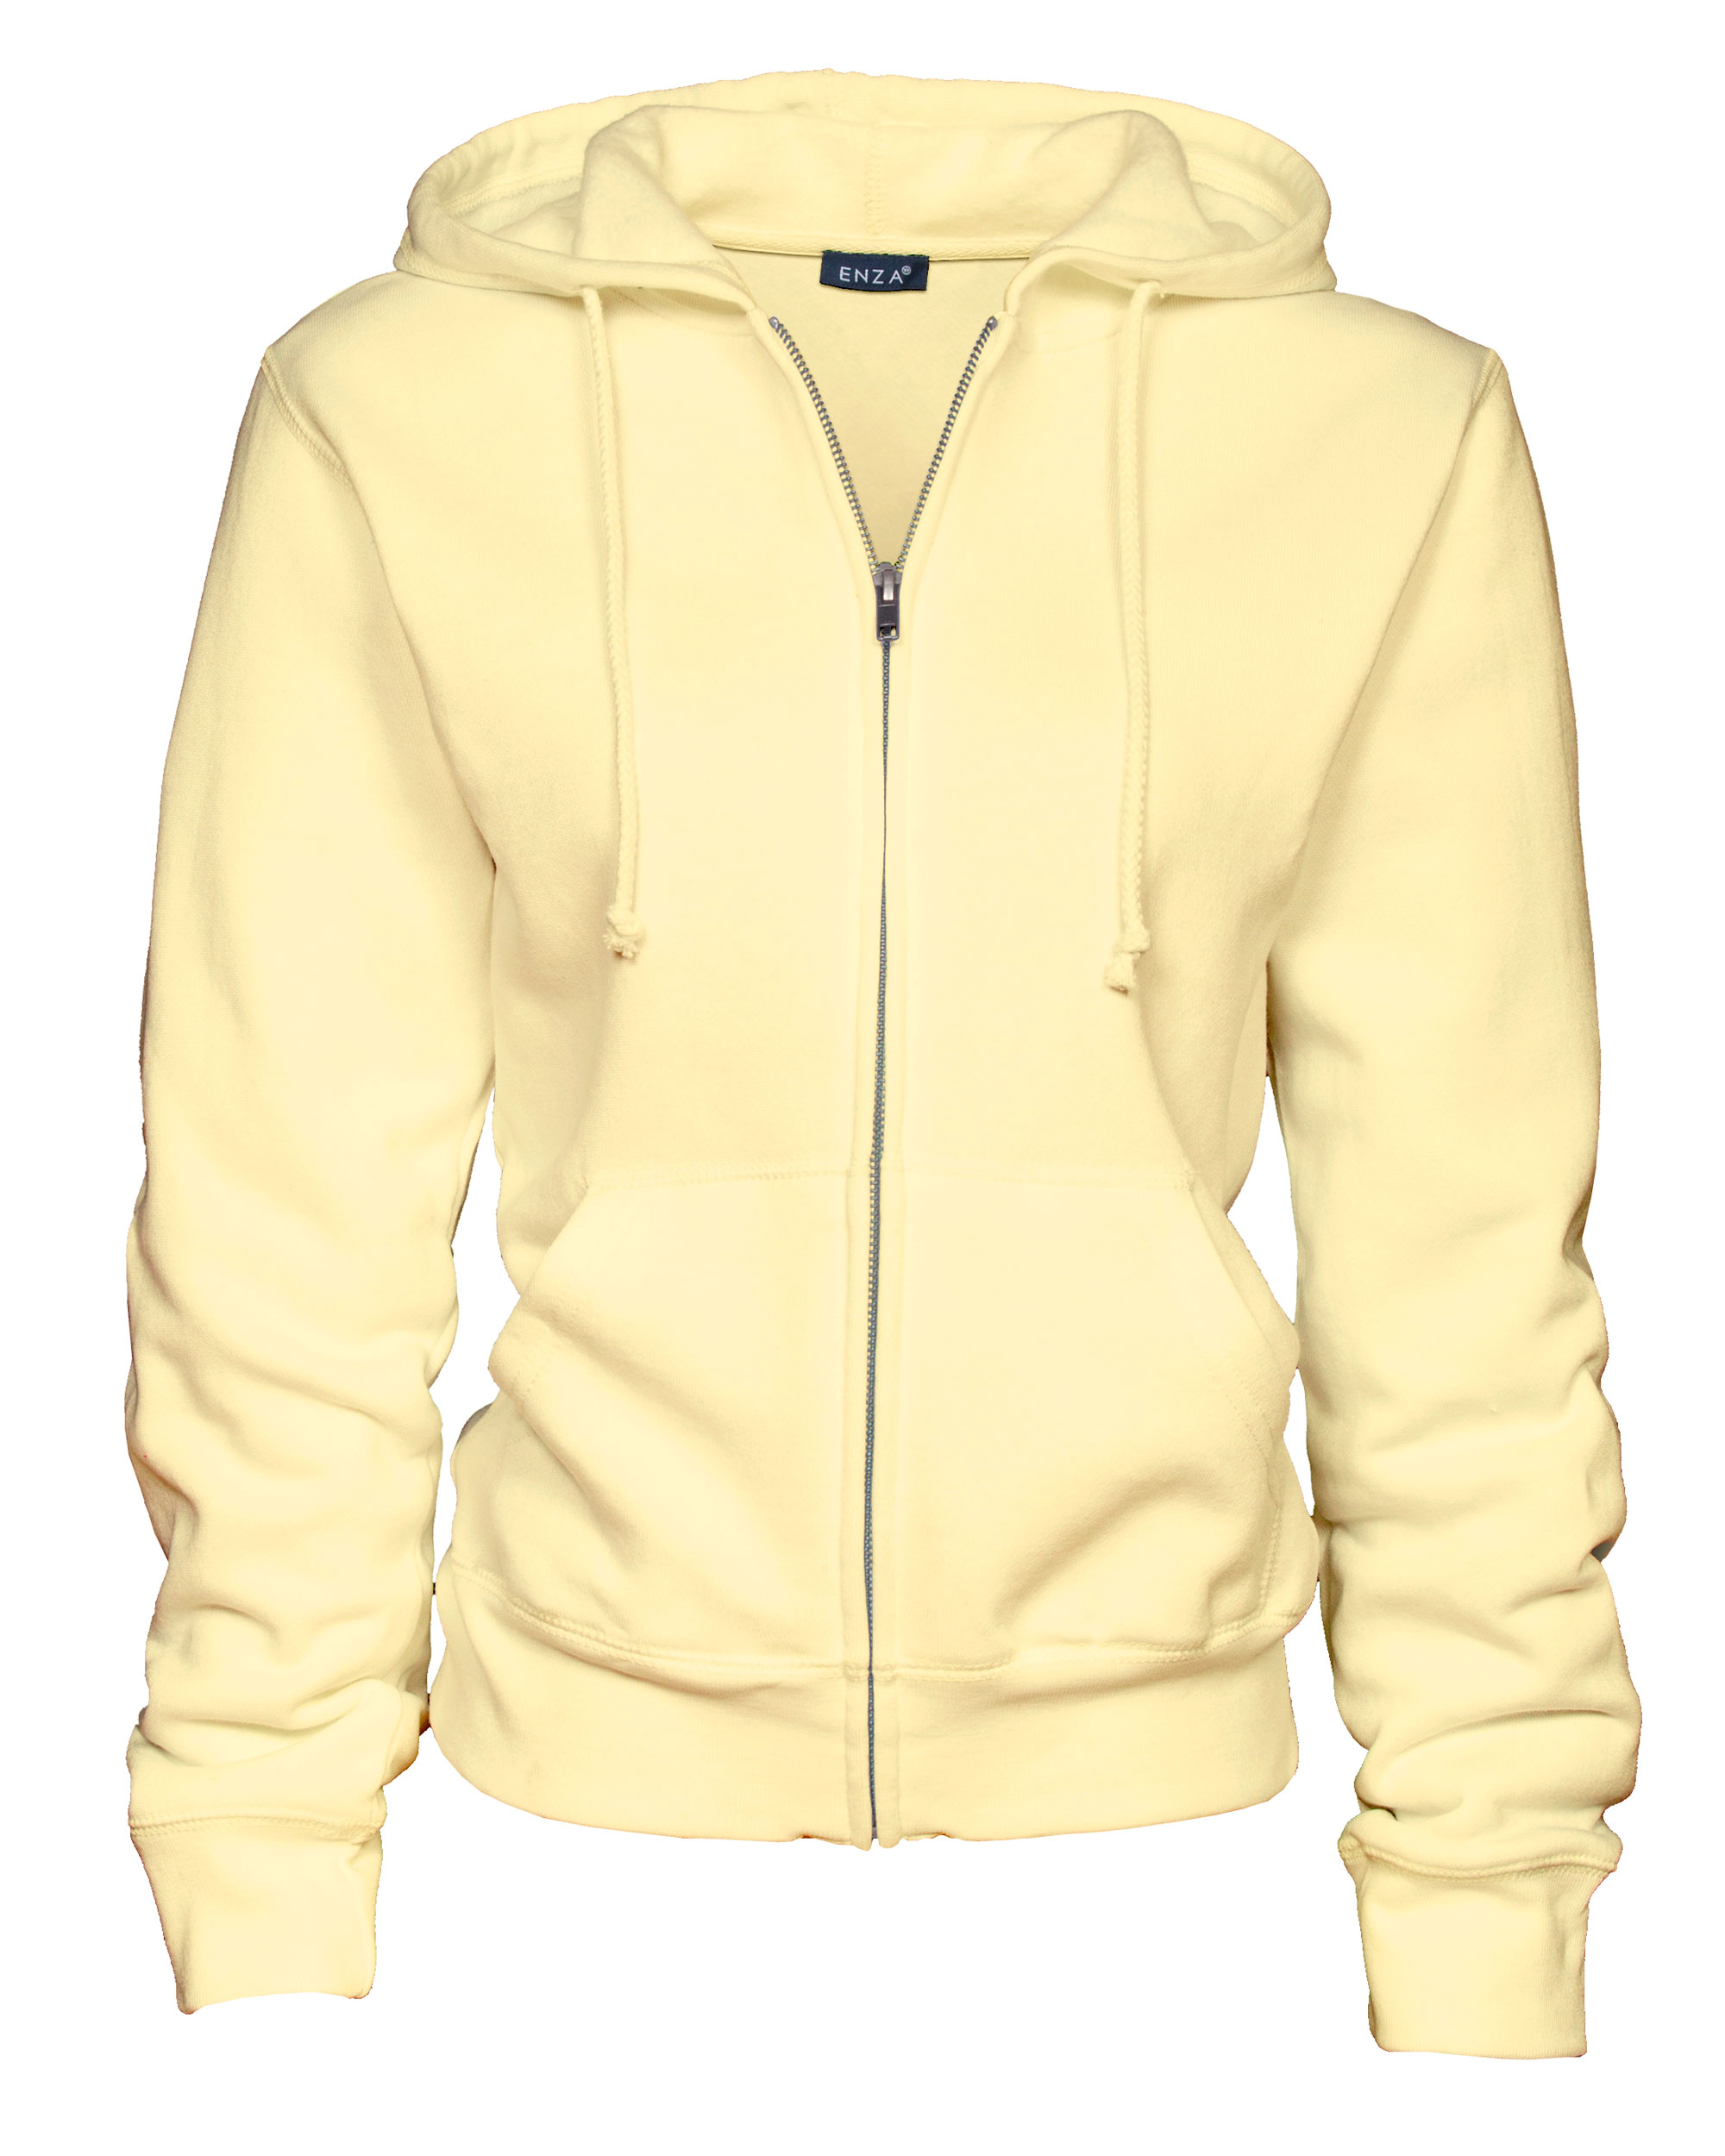 Enza® 34079 Ladies Classic Fleece Full Zip Hood